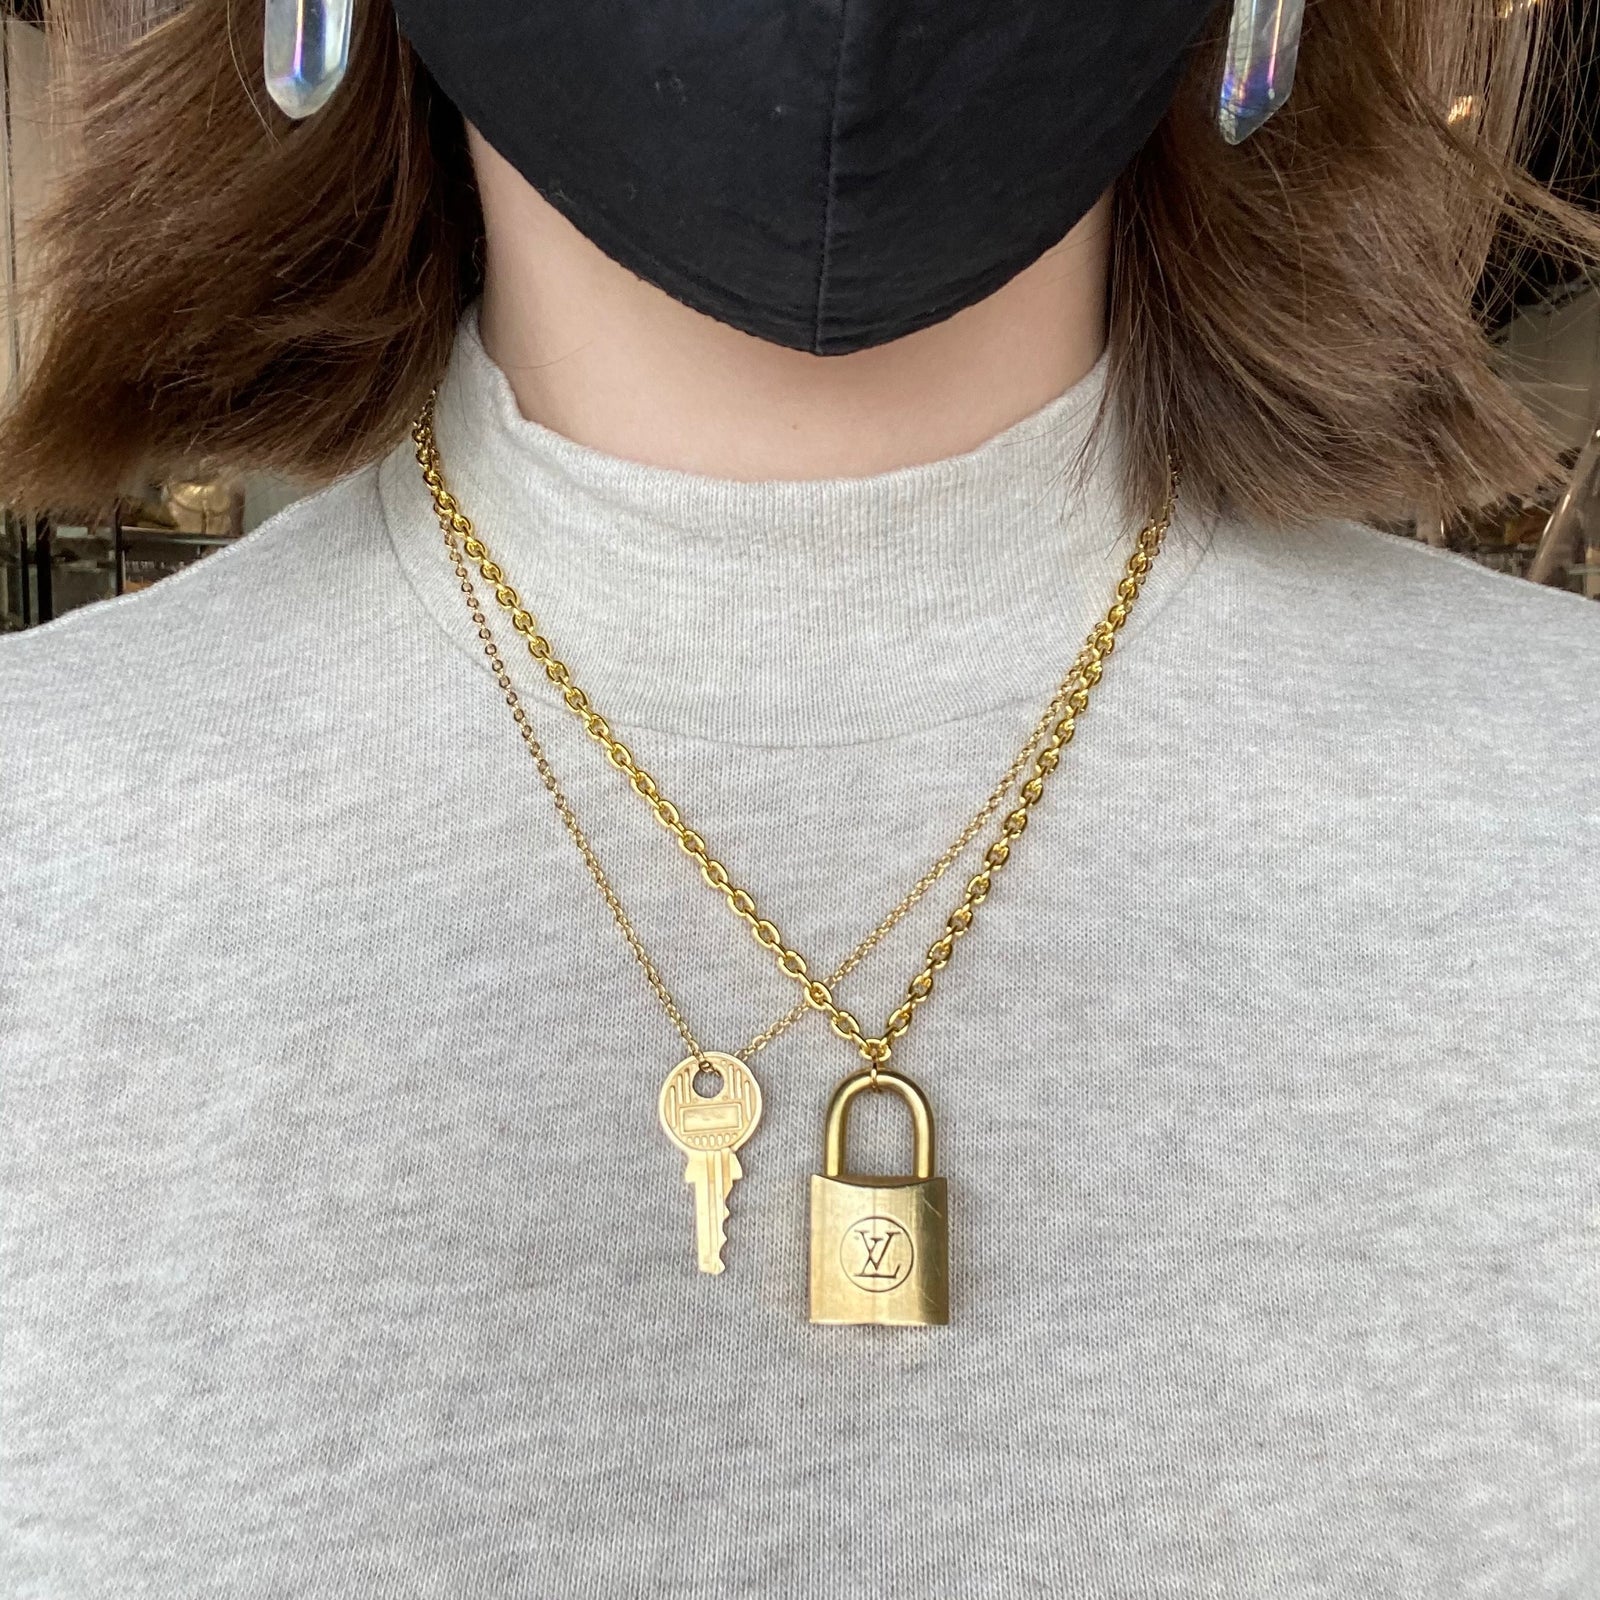 S162 Vintage necklace gold tone large chain lock pendant Louis Vuitton   eBay